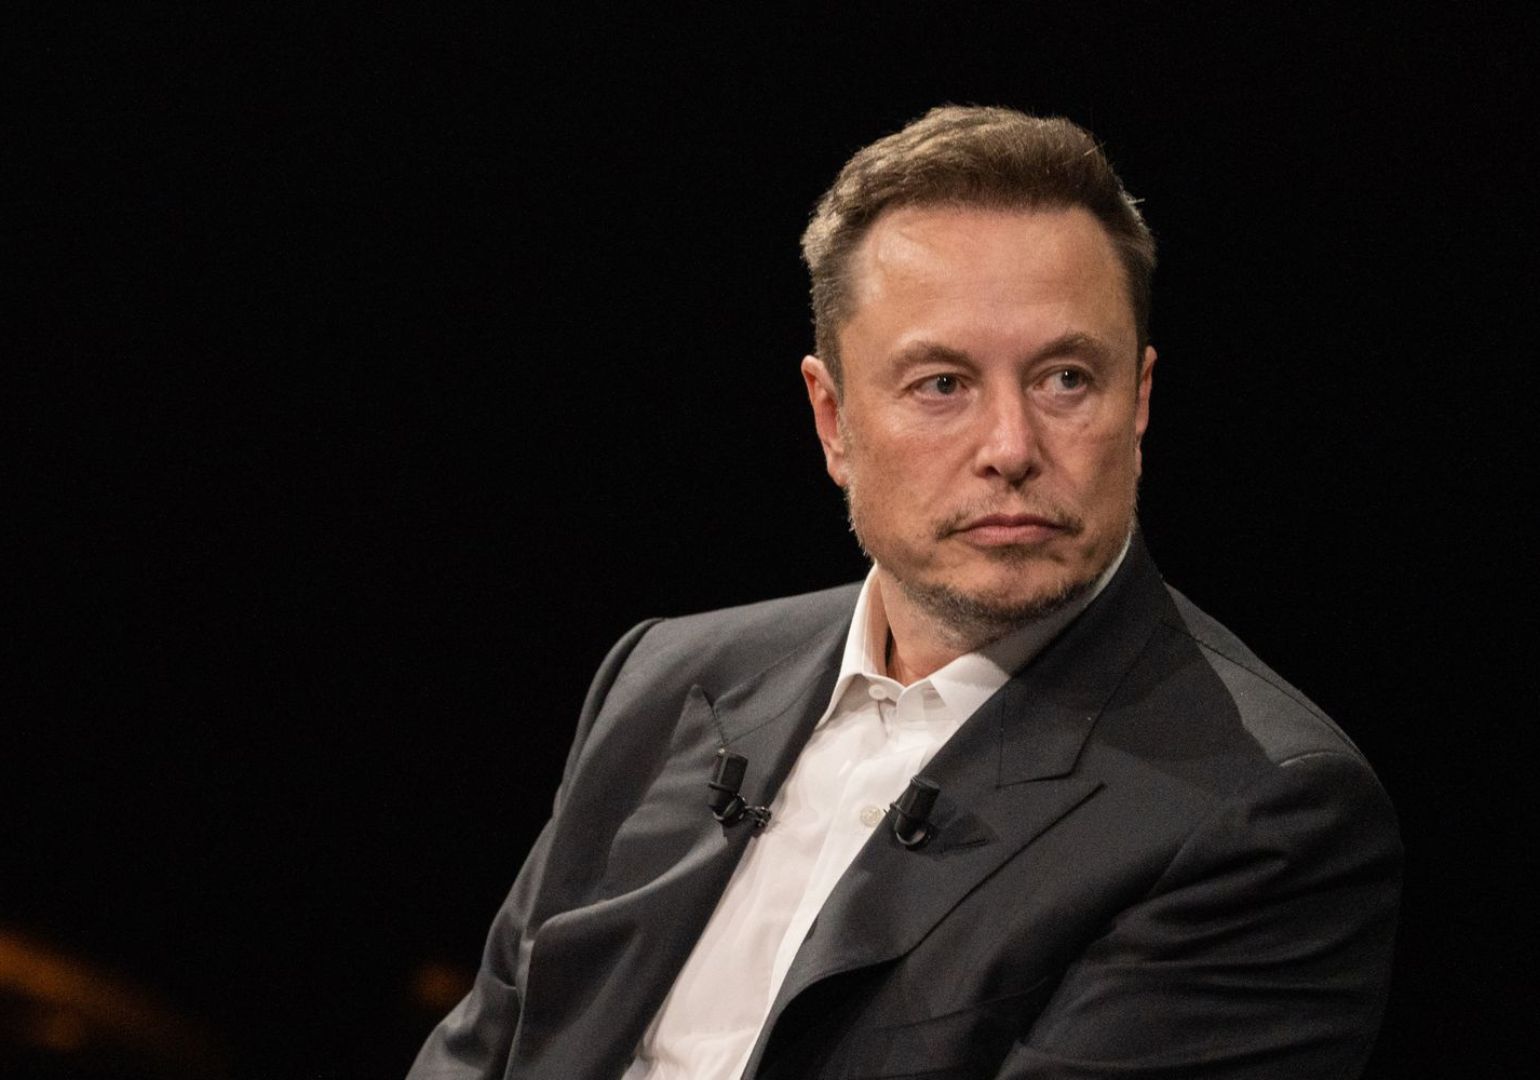 Tesla-ს აქციონერი მასკს $7.5 მილიარდის ინსაიდერული ვაჭრობისთვის უჩივის